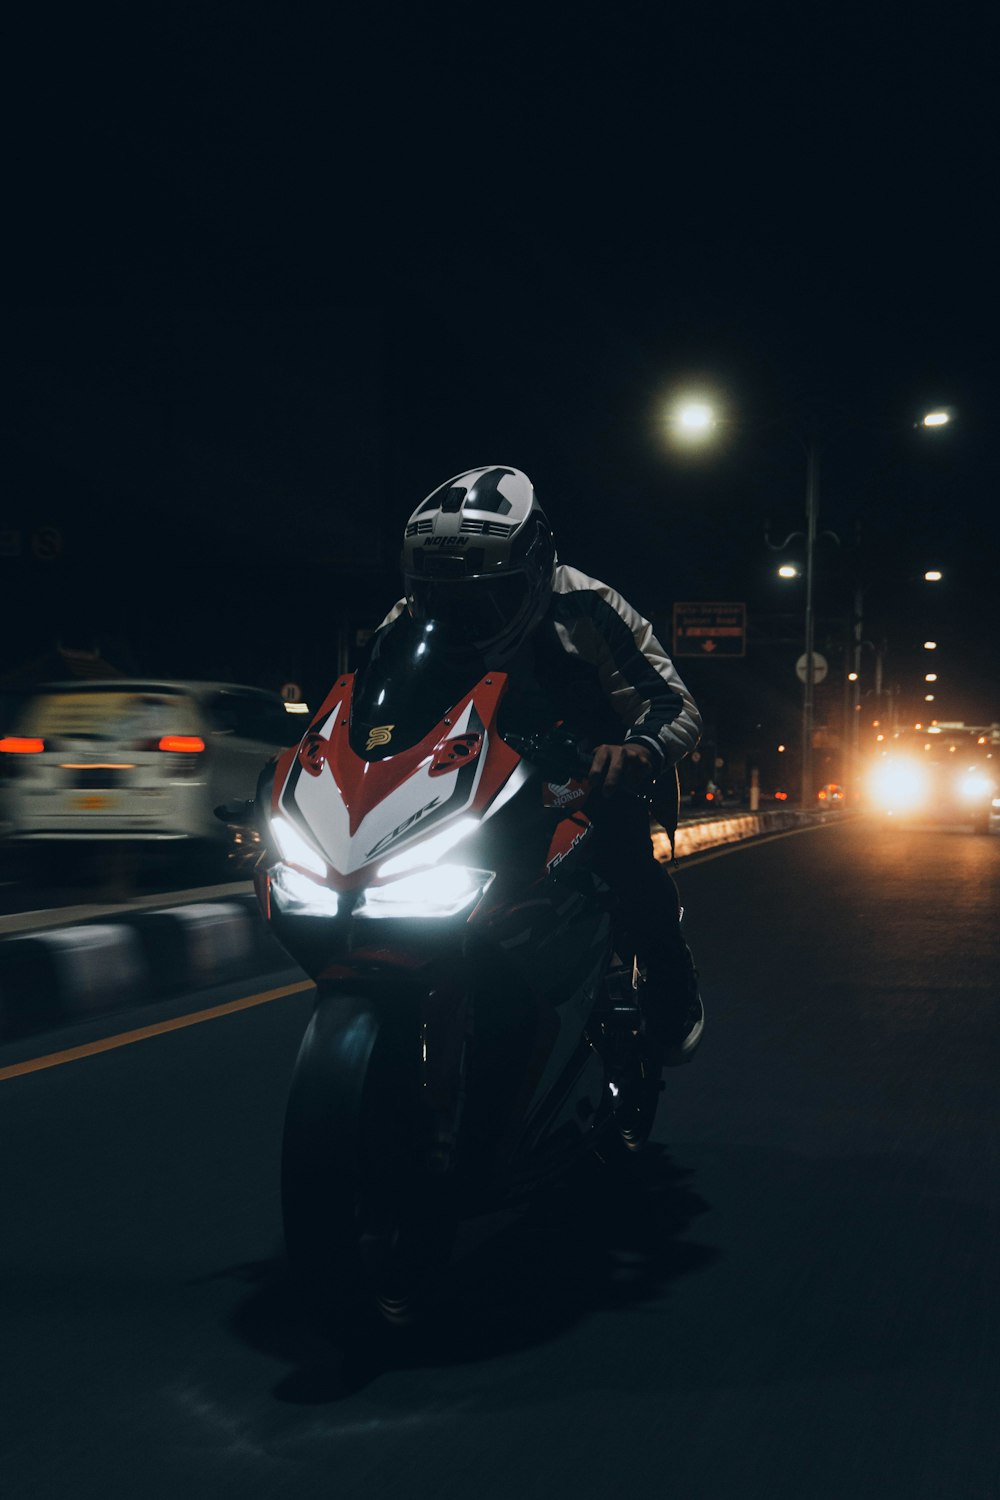 man in black jacket riding motorcycle during night time